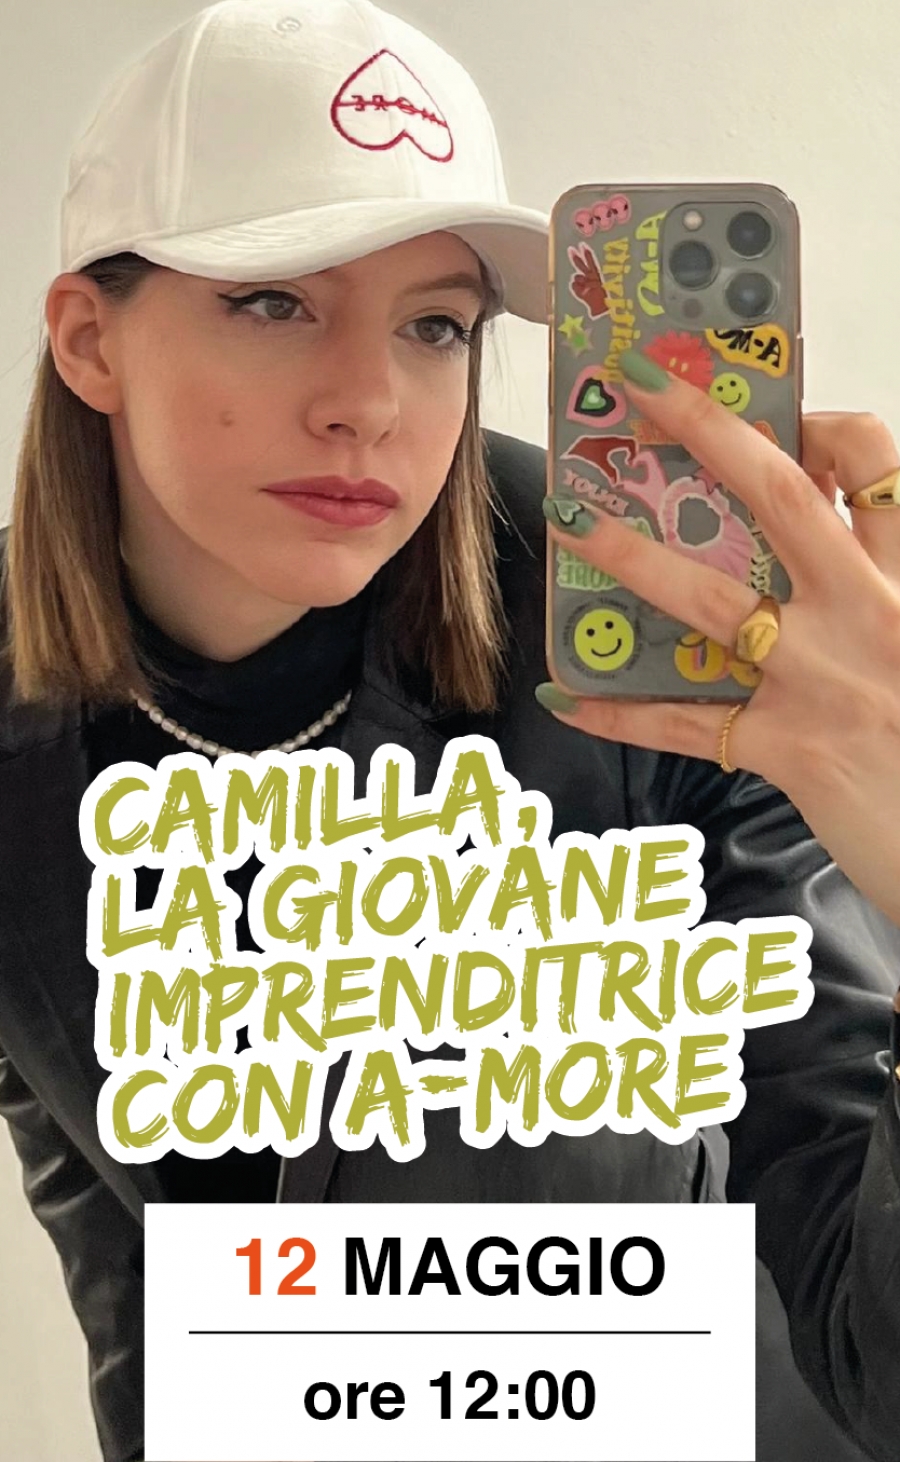 SETTIMO -  Camilla, la giovane imprenditrice con A-More